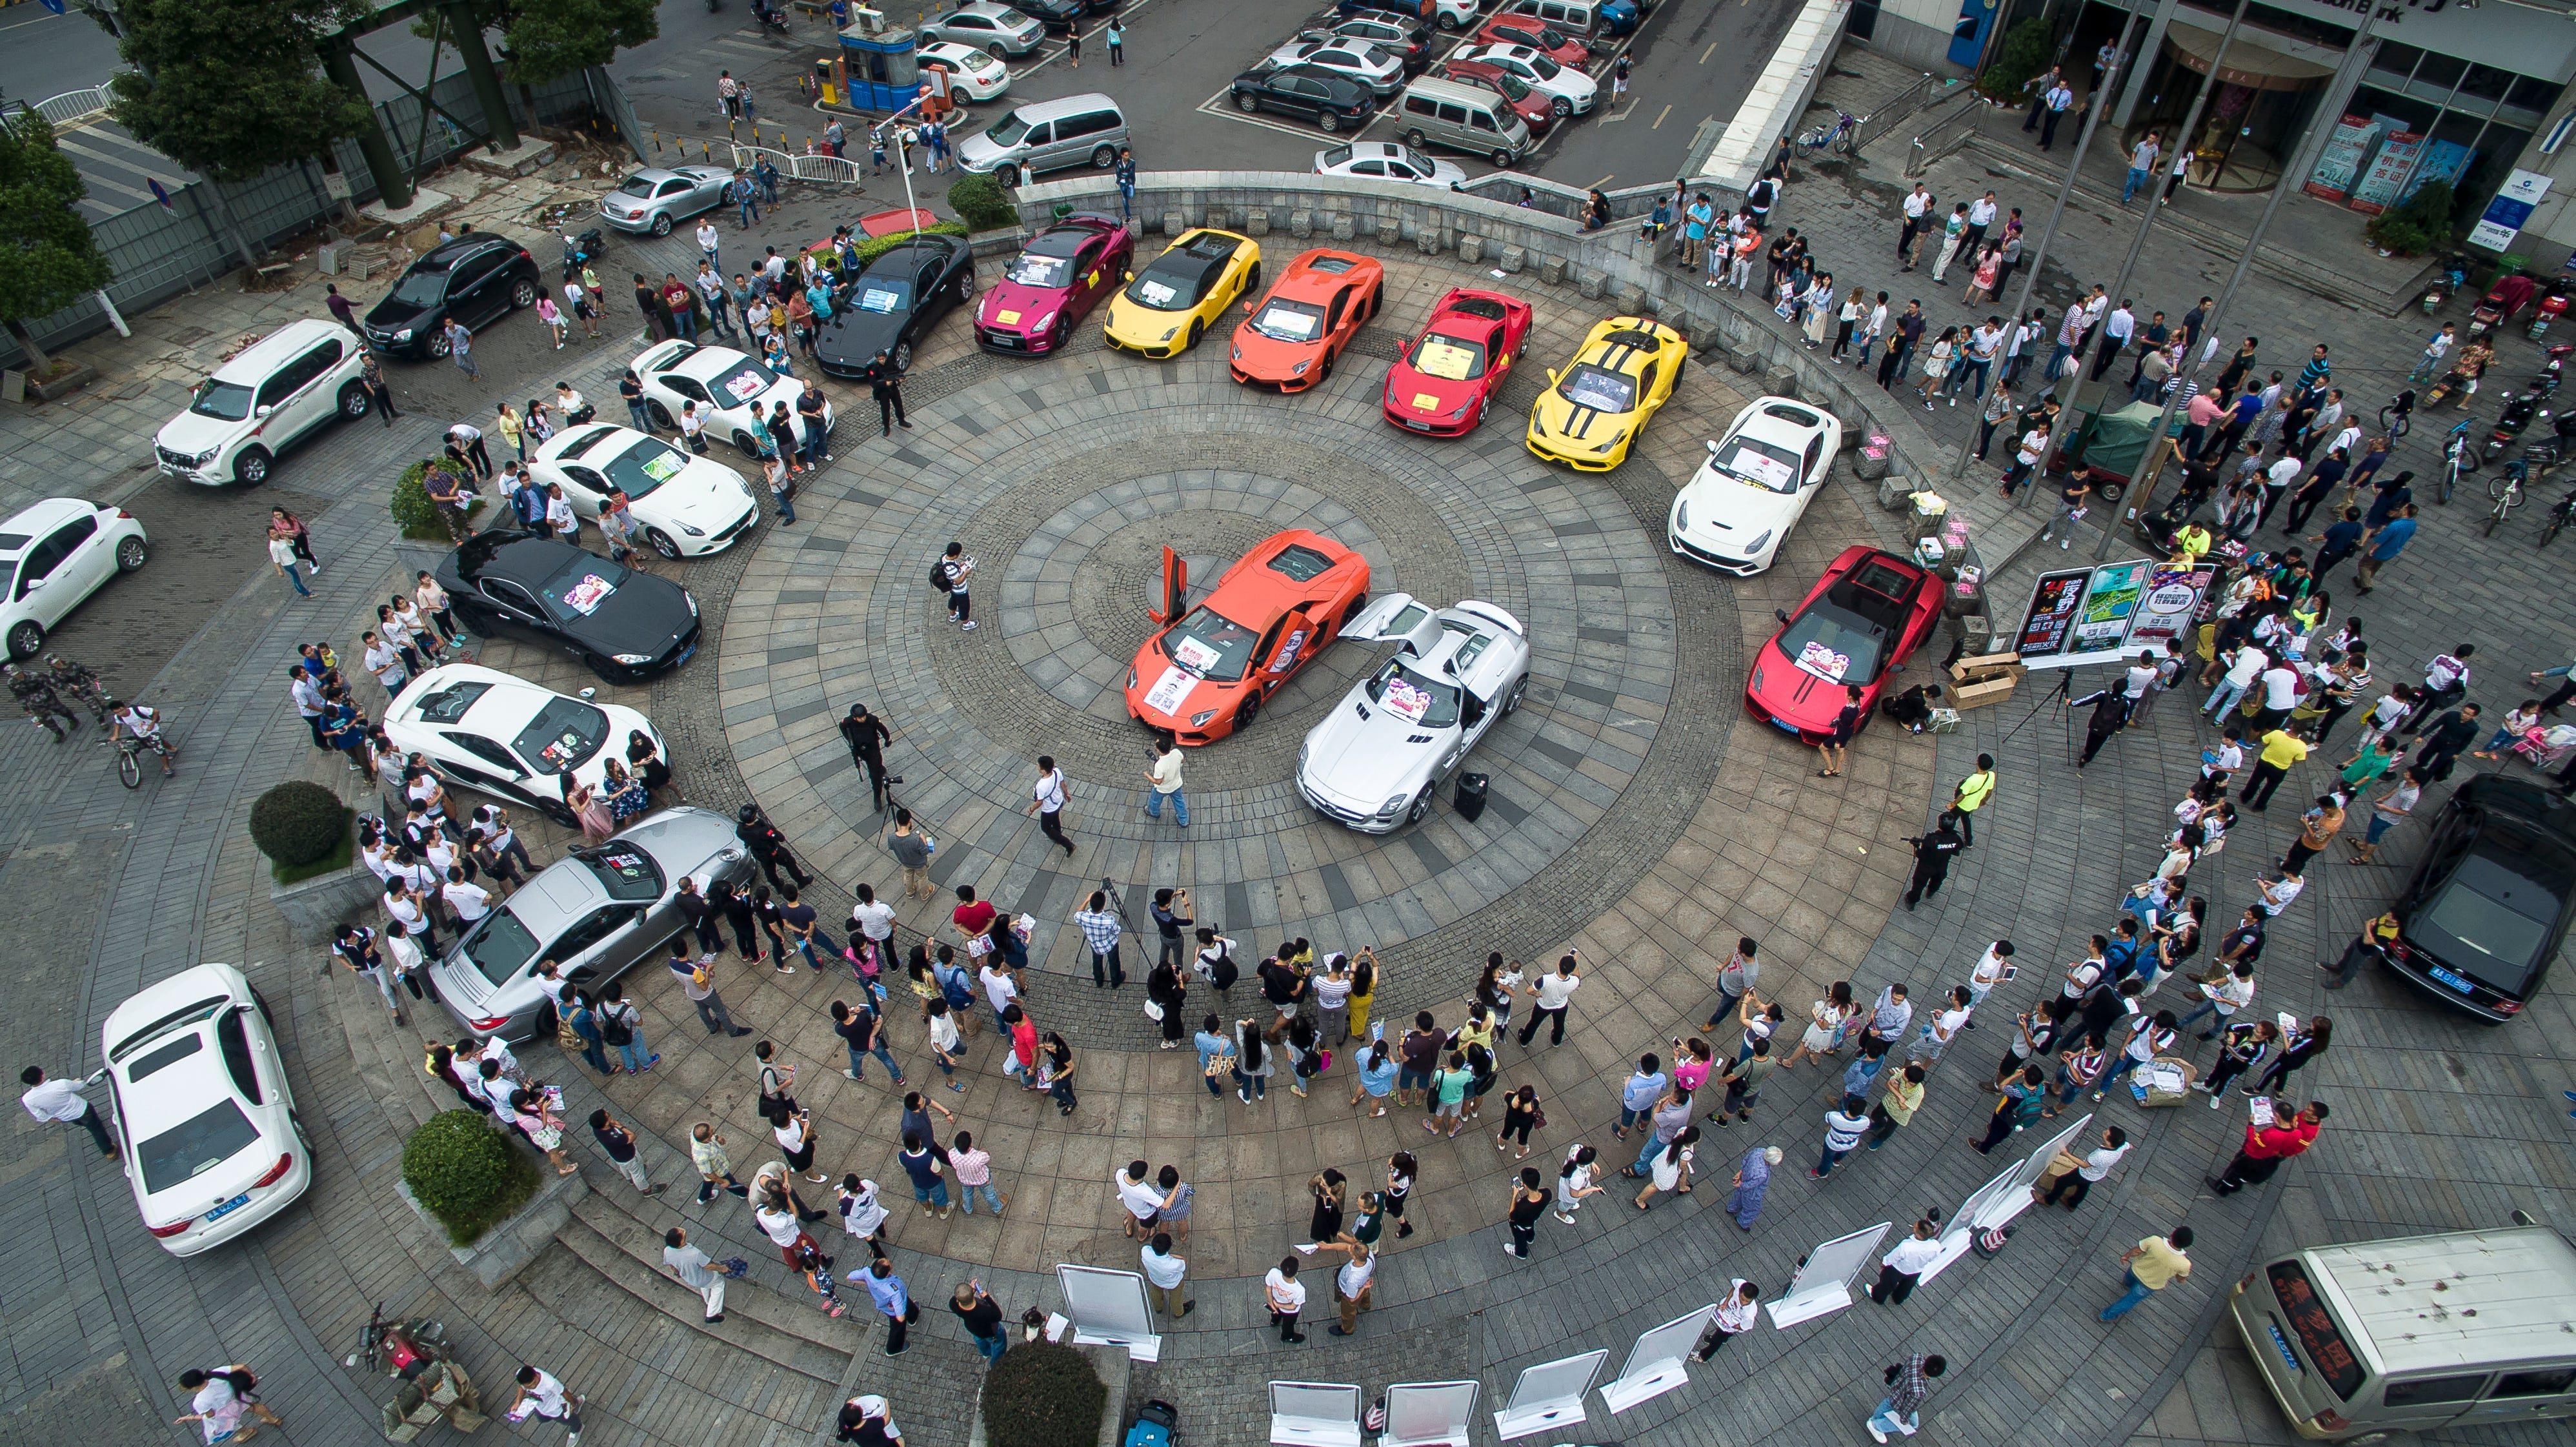 Ein Chef organisierte eine zwei Milliarden RMB (ca. 314 Millionen USD) große Gruppe von über 20 Luxussportwagen, darunter Lamborghini LP700 und Benz-Autos in limitierter Auflage, um die Eröffnung eines Resorts am 12. September 2015 in Changsha, Provinz Hunan in China, zu fördern.